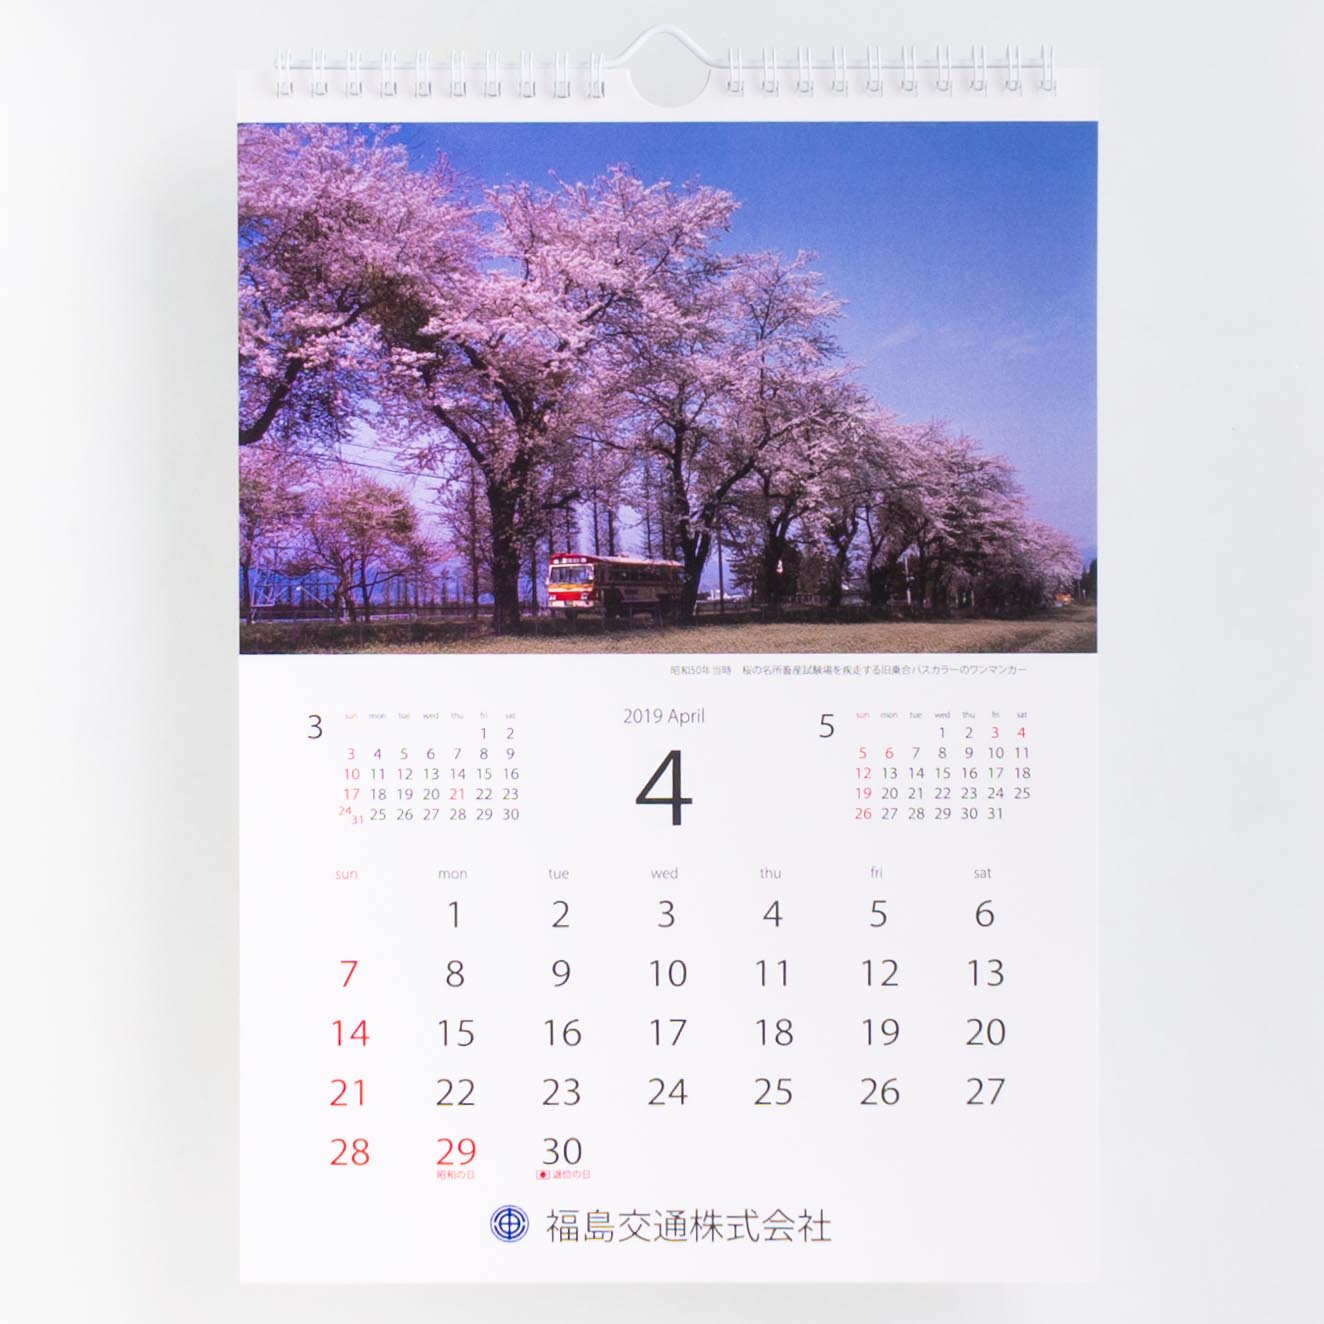 「福島交通株式会社 様」製作のオリジナルカレンダー ギャラリー写真1